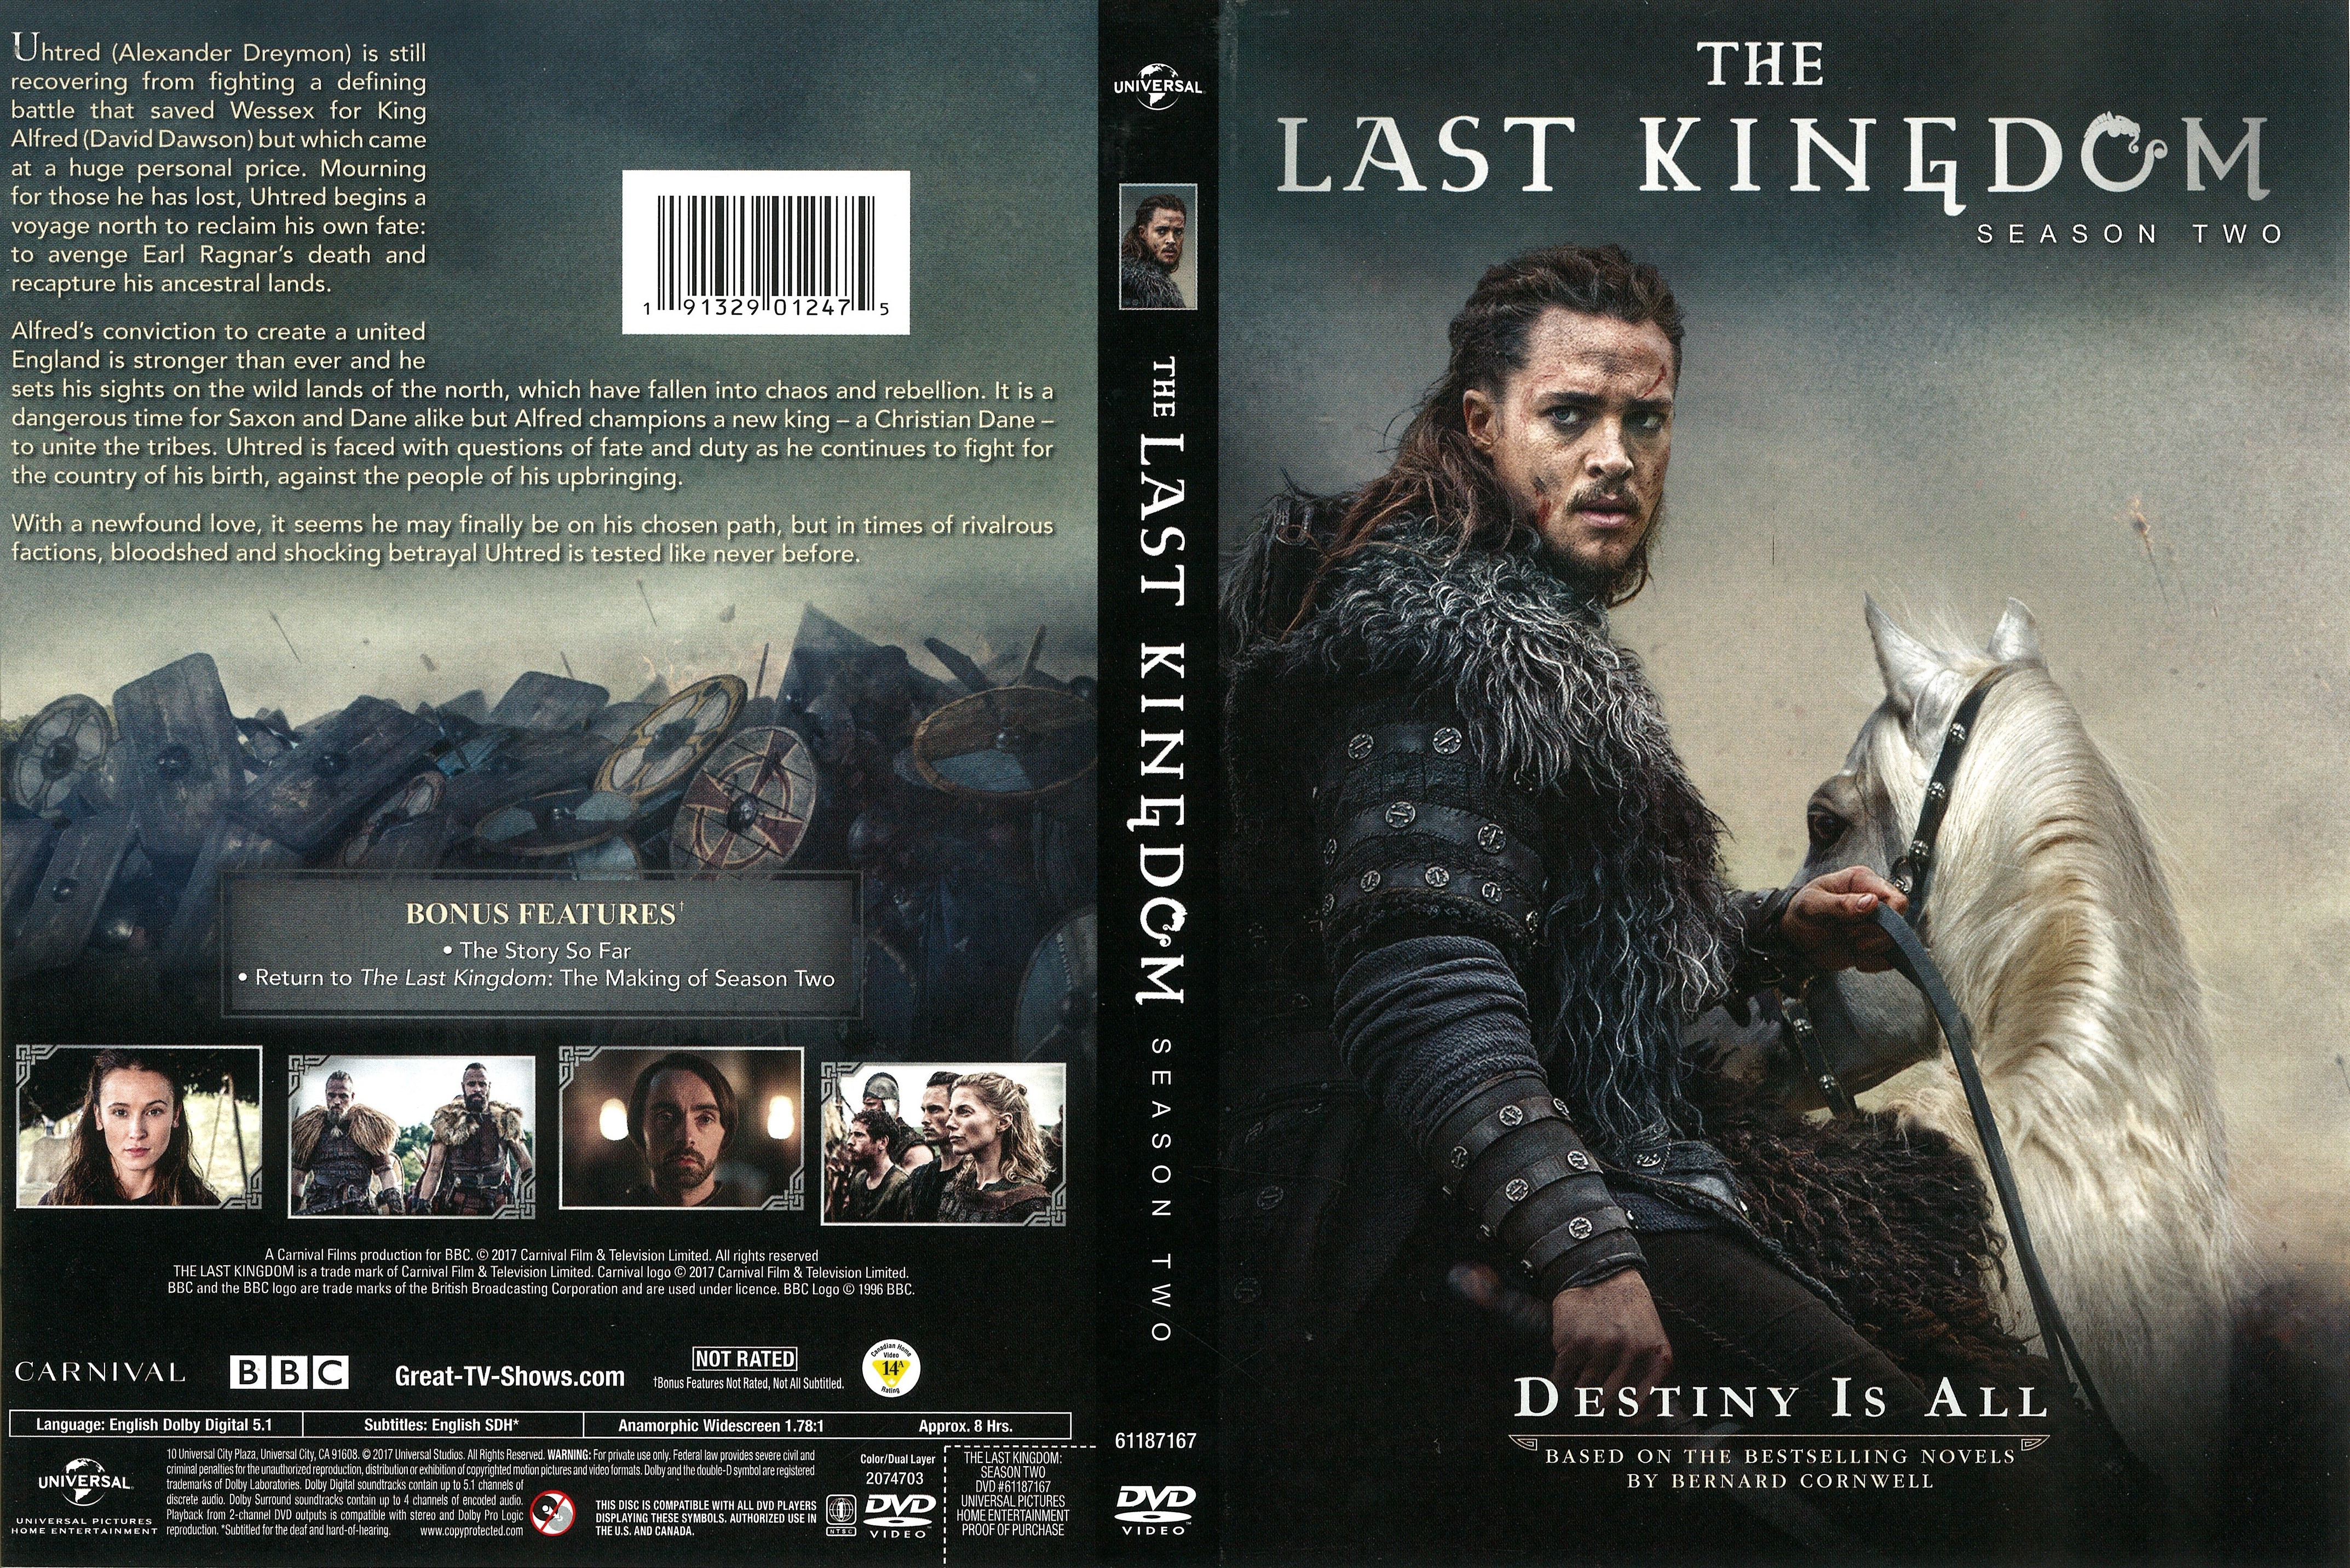 The Last Kingdom Season 2 DVD Cover - Cover Addict - Free 